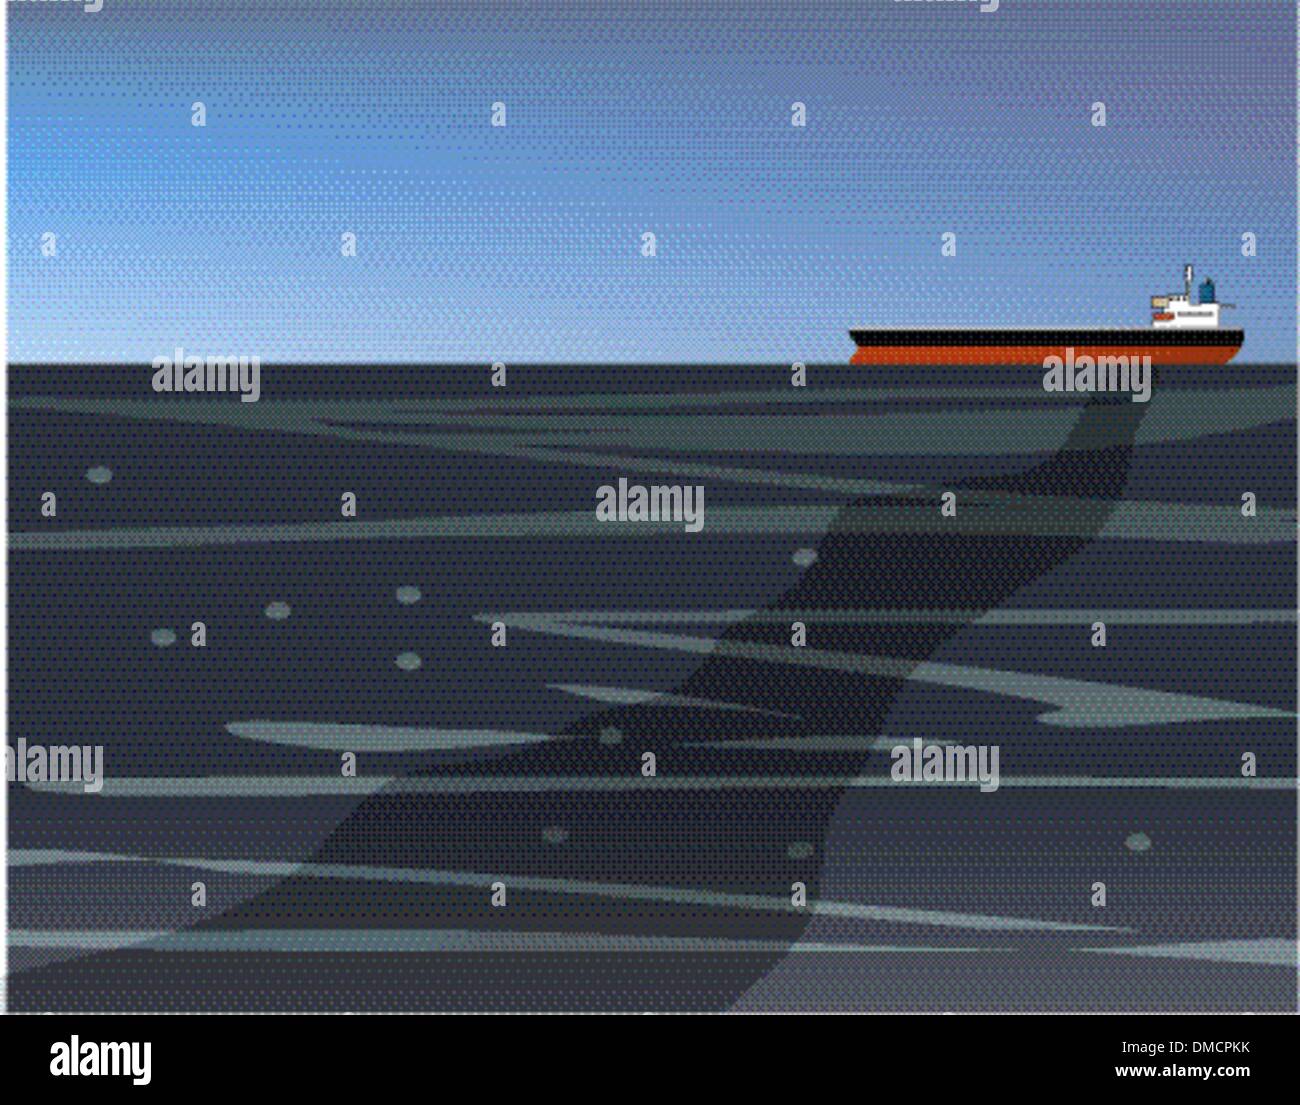 Le déversement d'un navire de pétrole brut Illustration de Vecteur